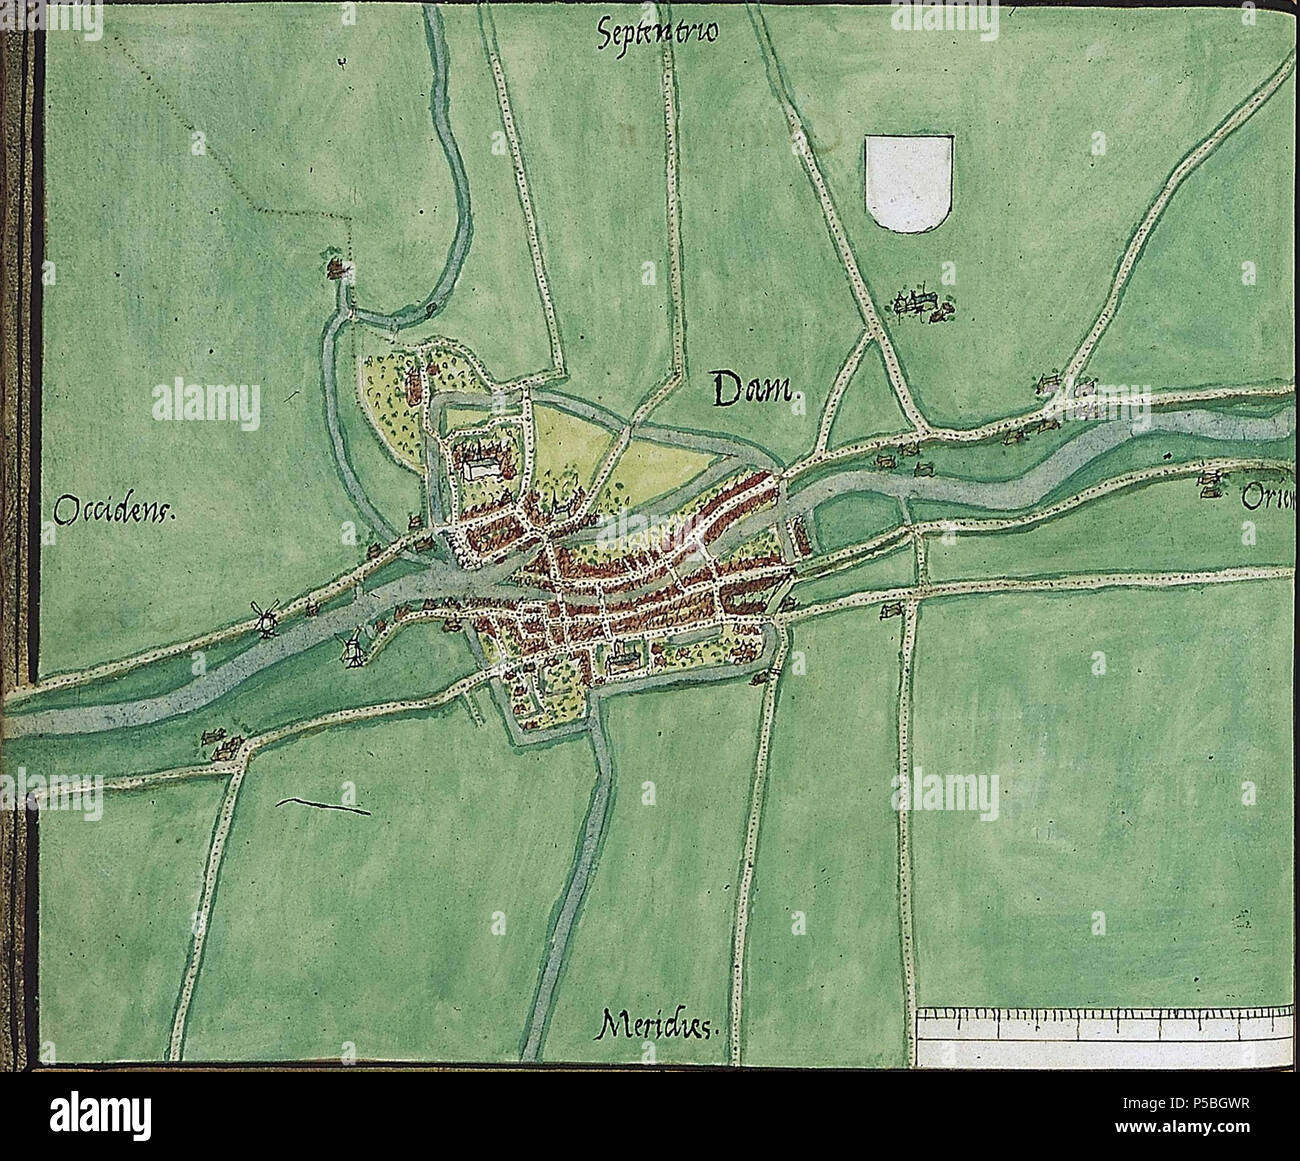 N/A. Nederlands: Kaart van Appingedam uit de atlas Planos de ciudades de los Países Bajos: Parte III . 1545. Jacob van Deventer 115 Appingedam 1545 Foto de stock